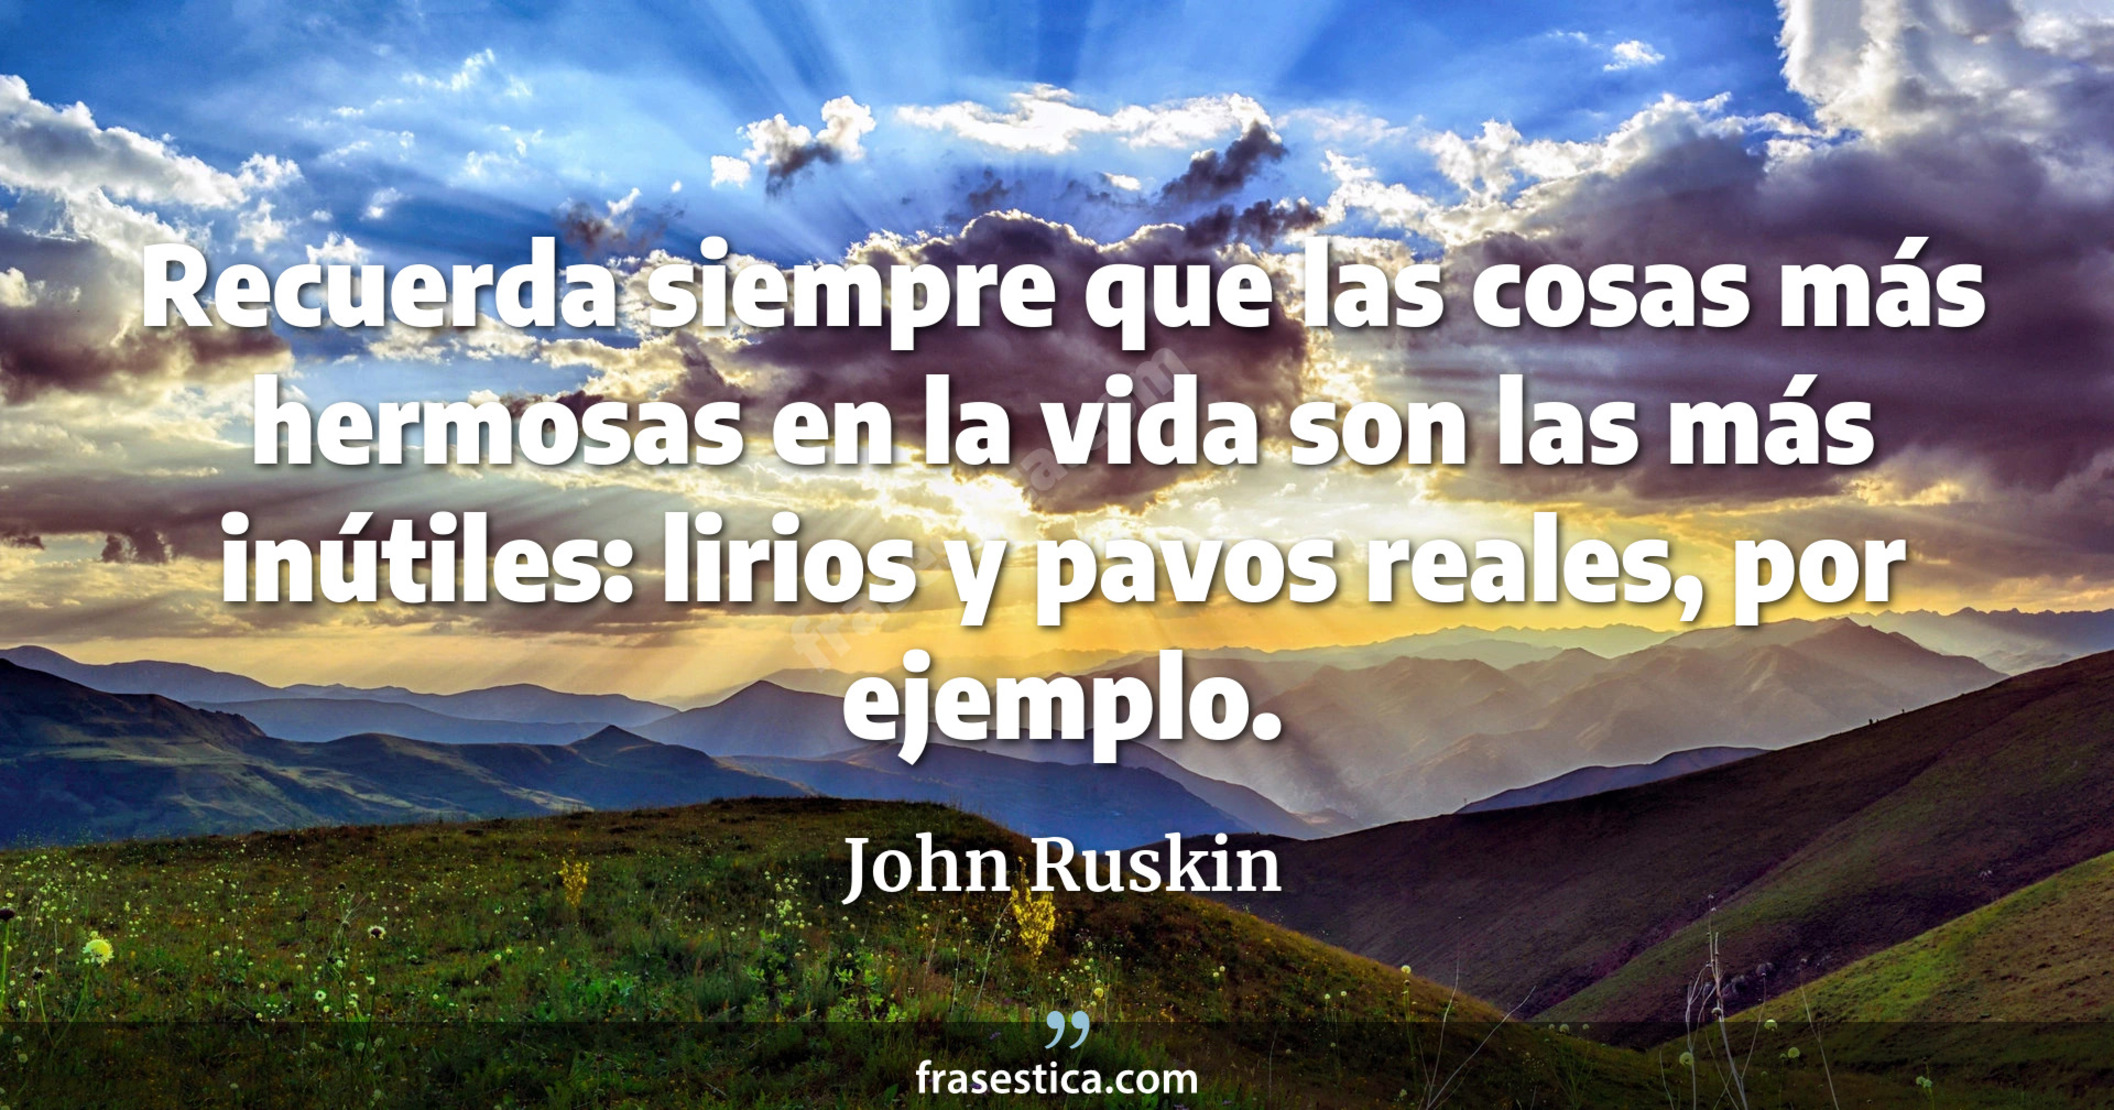 Recuerda siempre que las cosas más hermosas en la vida son las más inútiles: lirios y pavos reales, por ejemplo. - John Ruskin